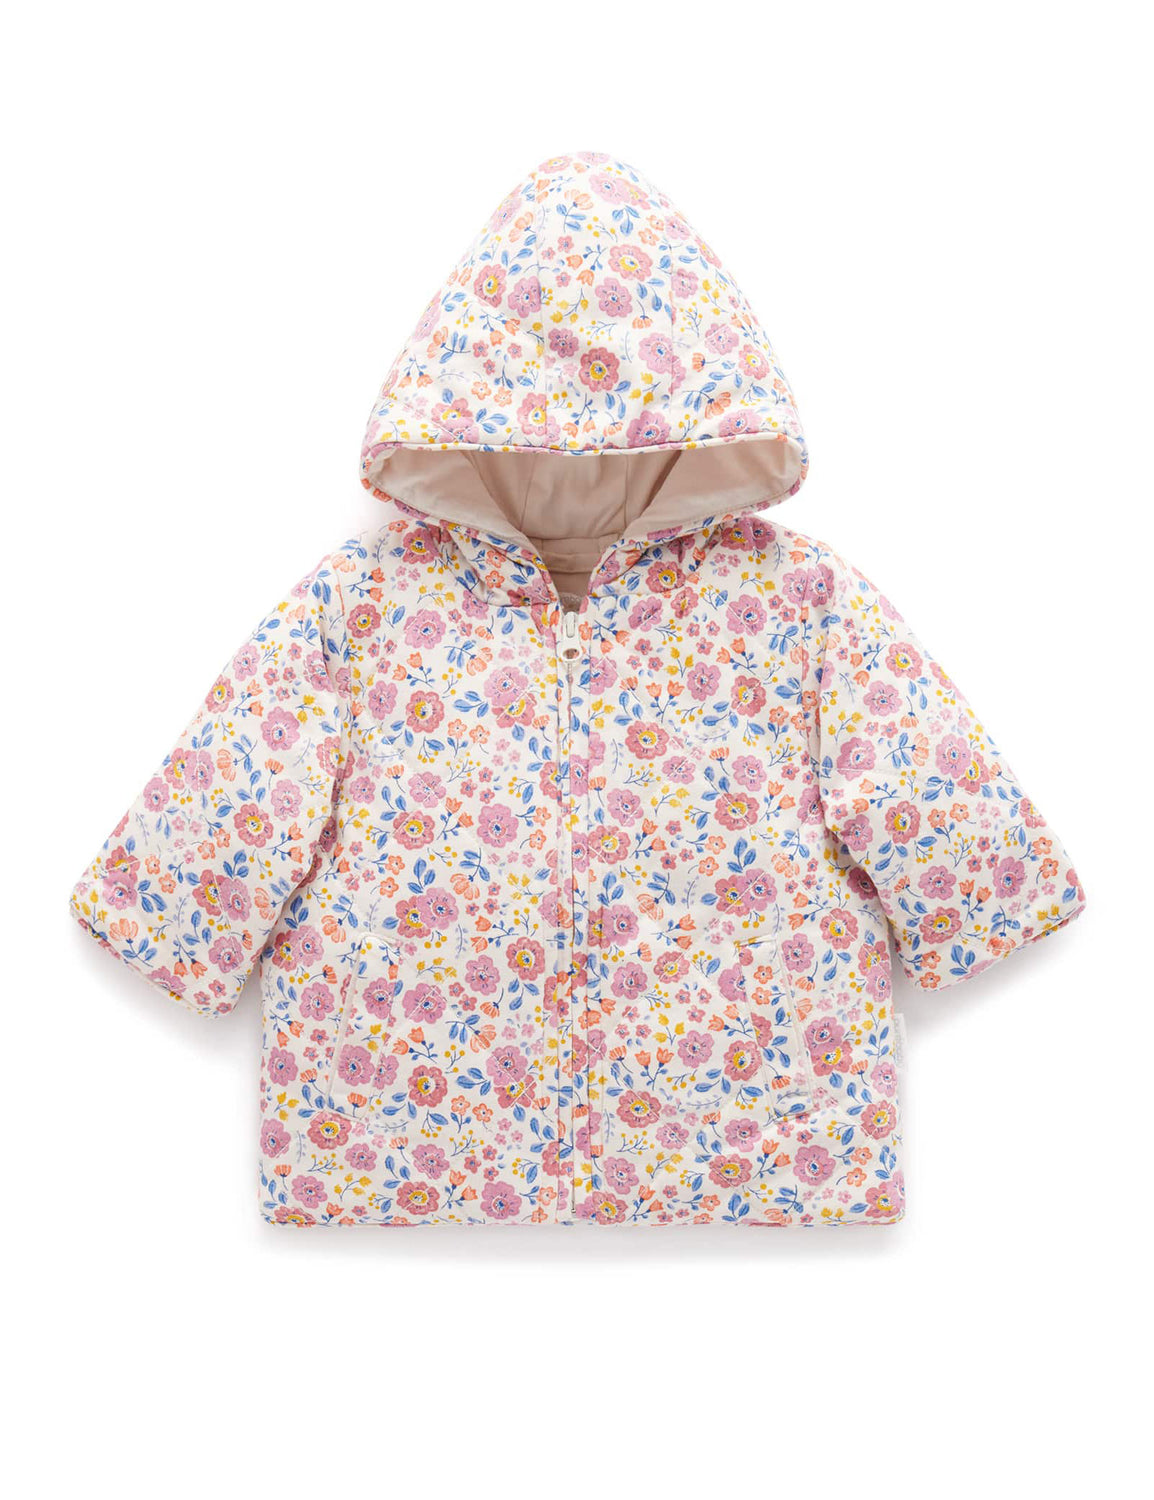 Pink Bear Coat - Baby & Toddler Jackets - Purebaby - Purebaby